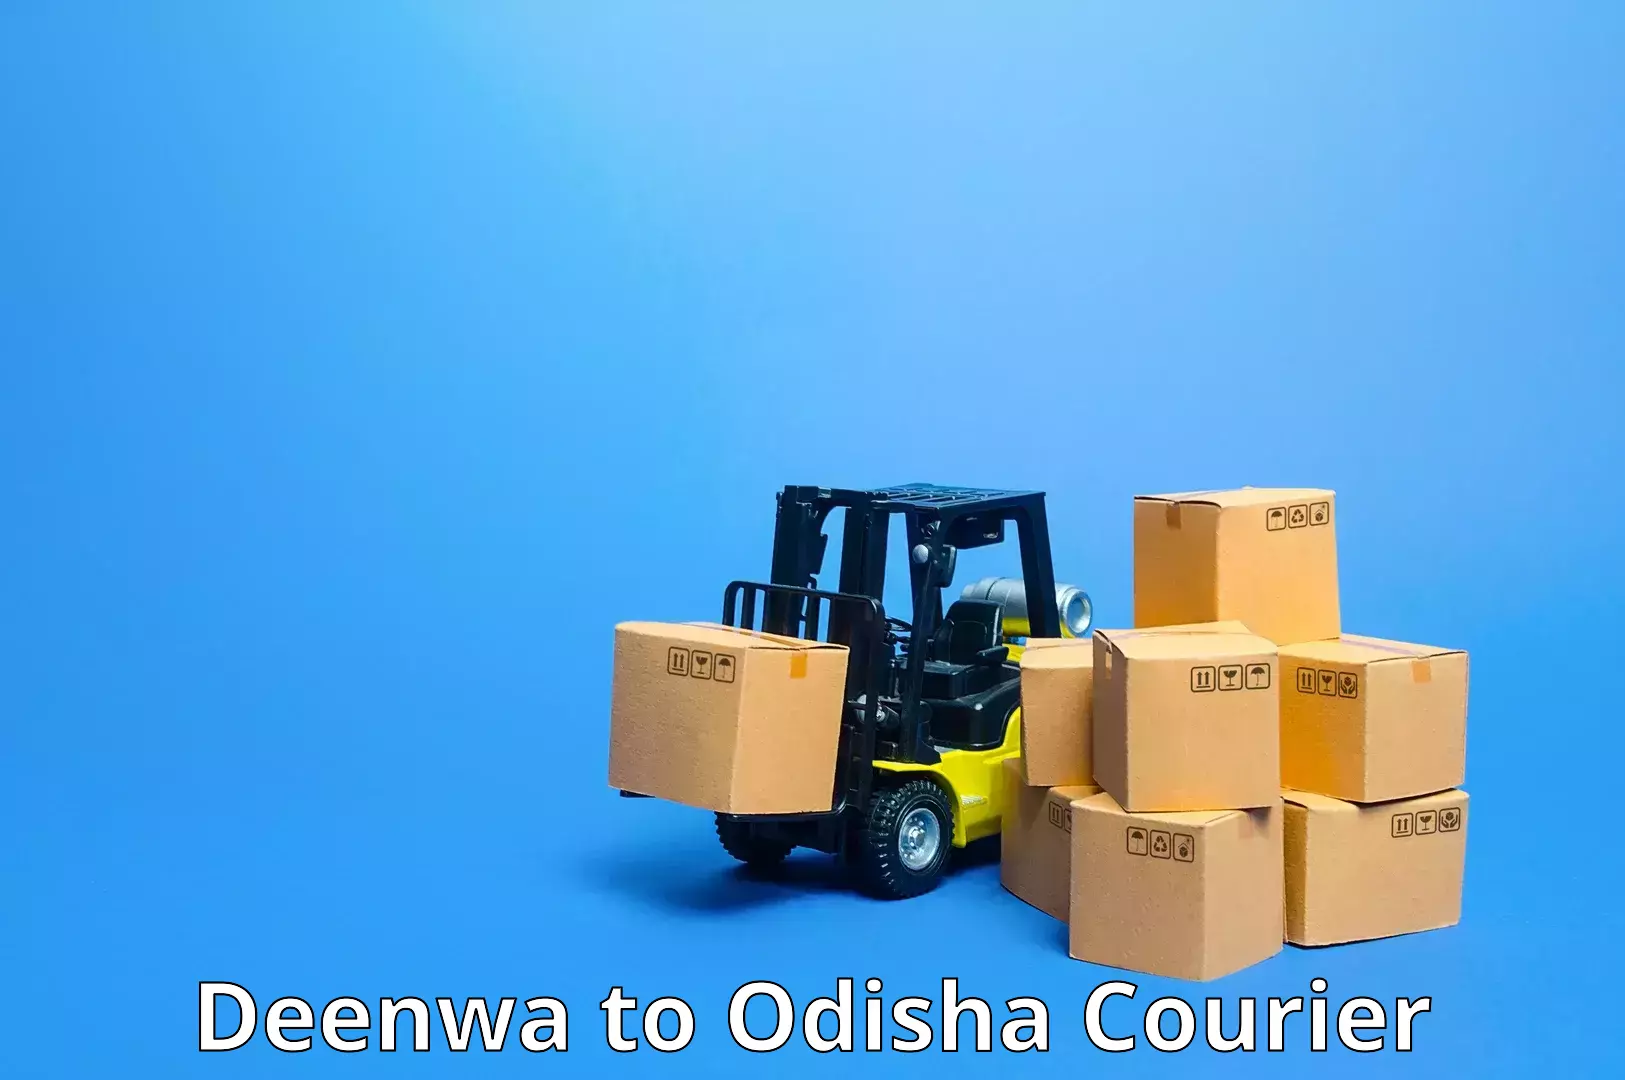 Reliable logistics providers Deenwa to Puranakatak